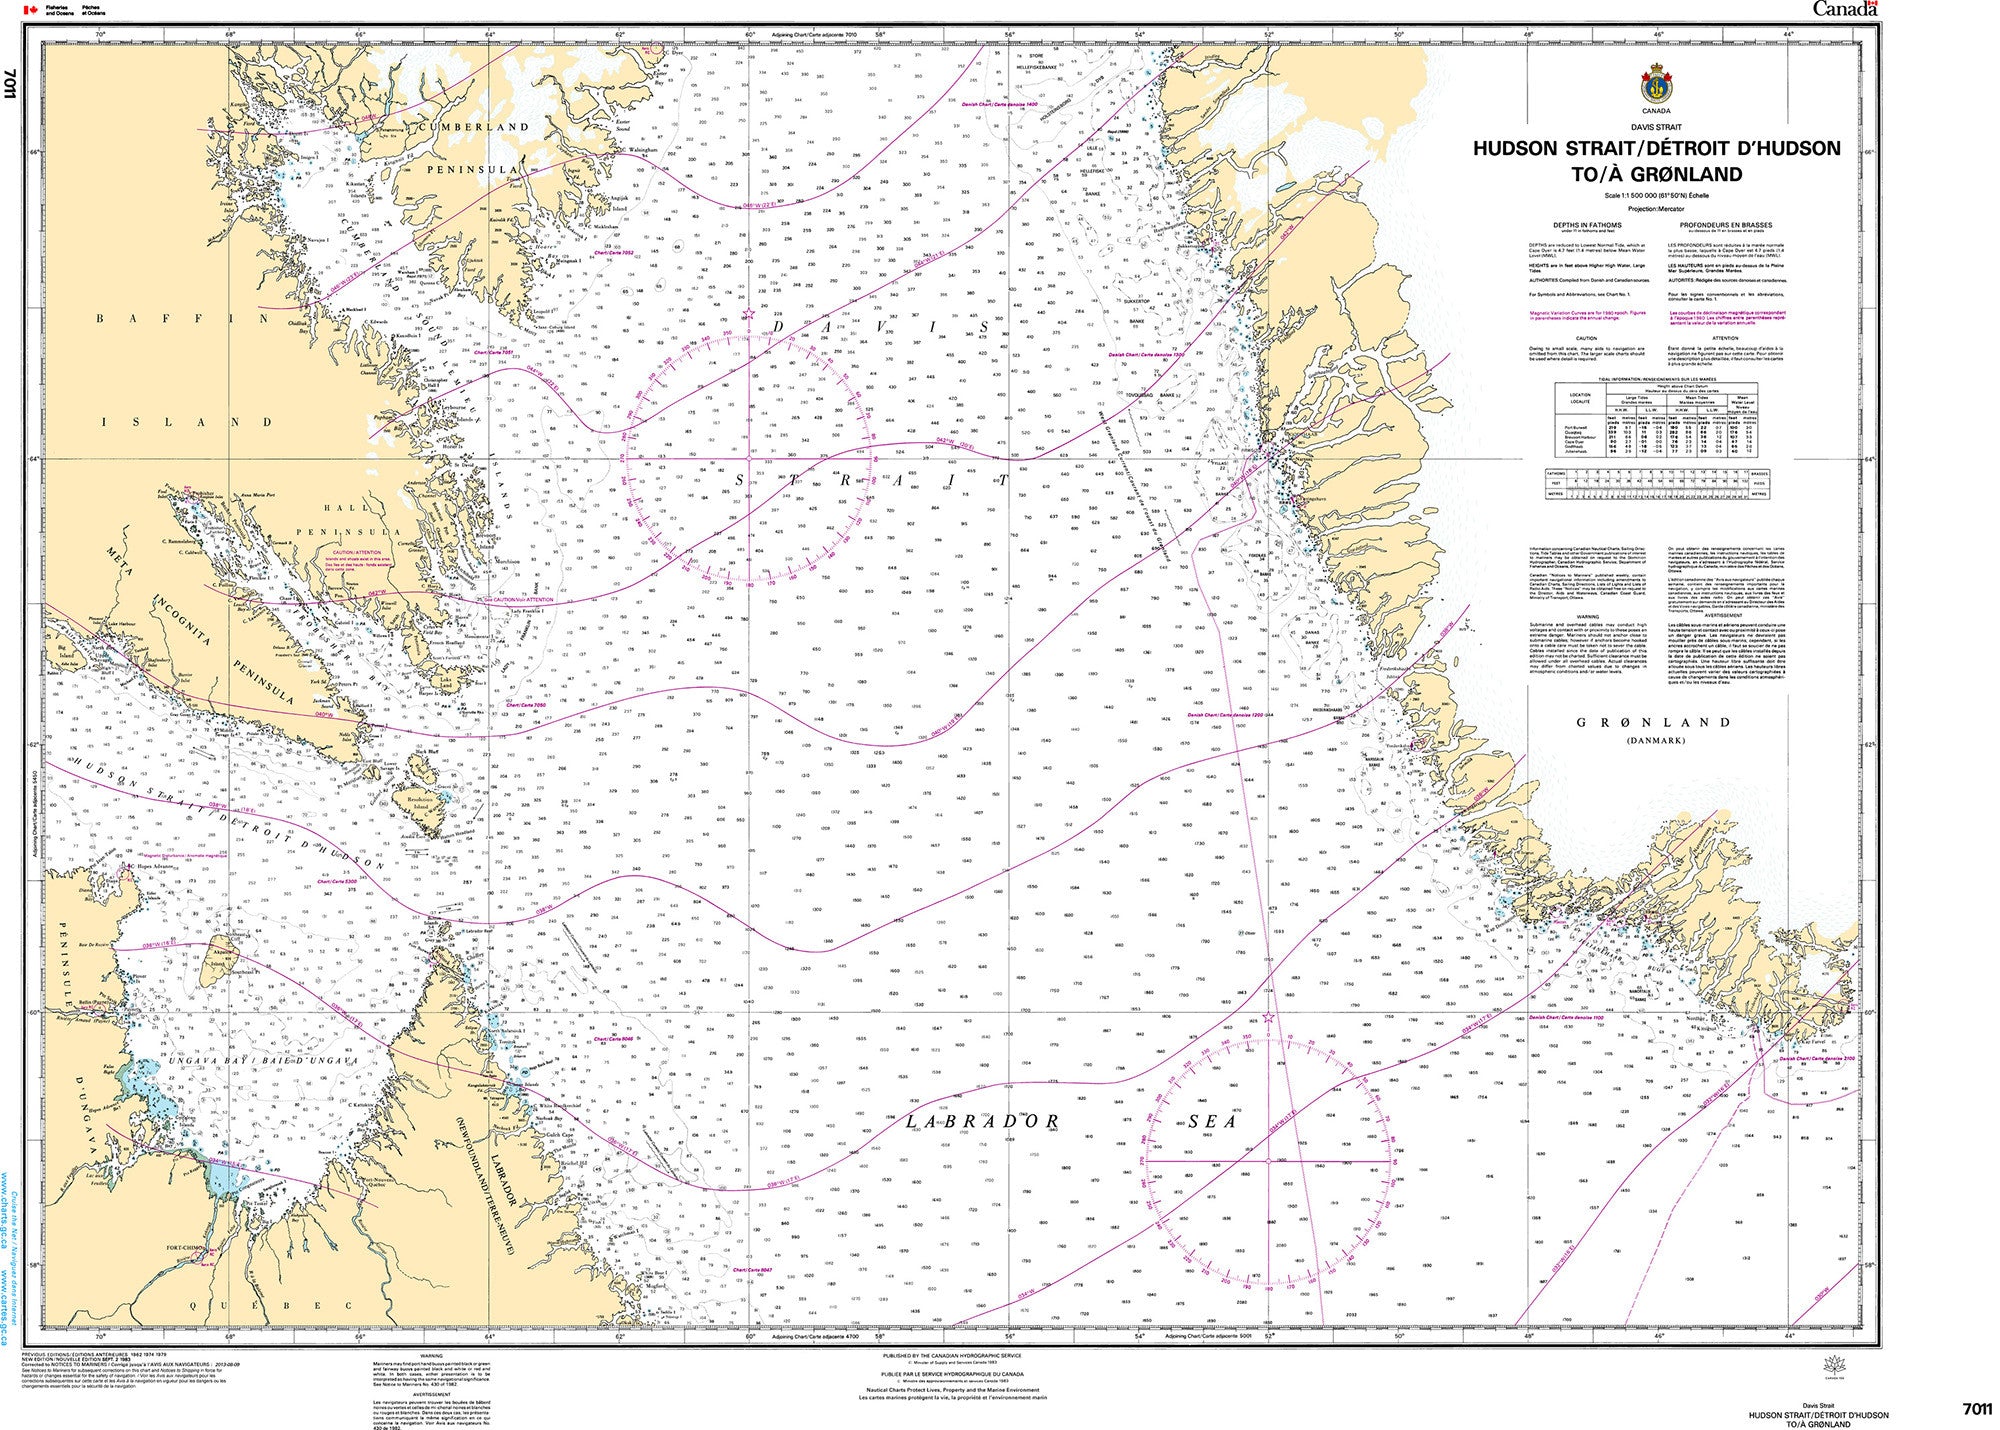 Canadian Hydrographic Service Nautical Chart CHS7011: Hudson Strait/Détroit D'Hudson to/à Groenland